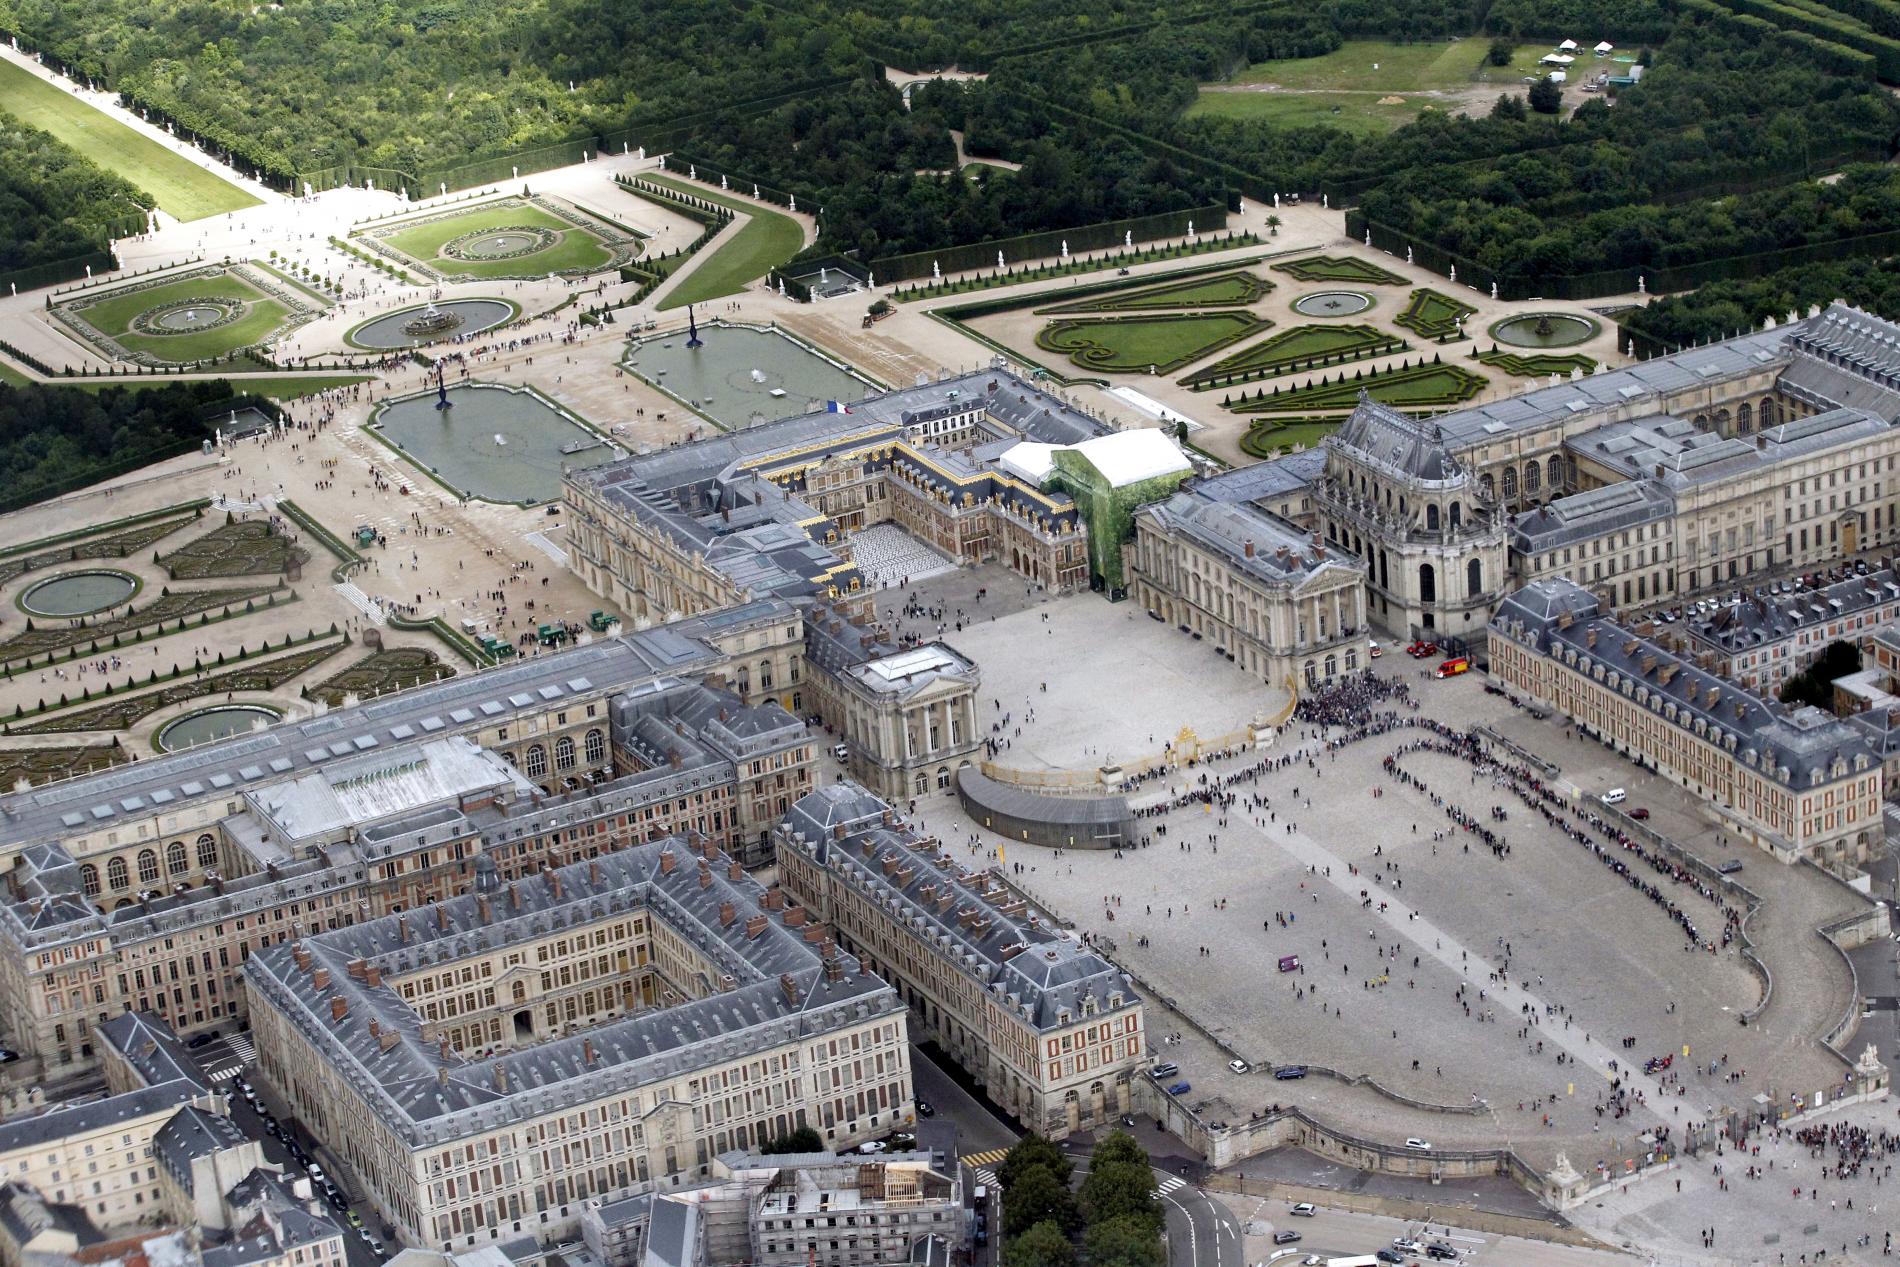 версальский дворец в париже